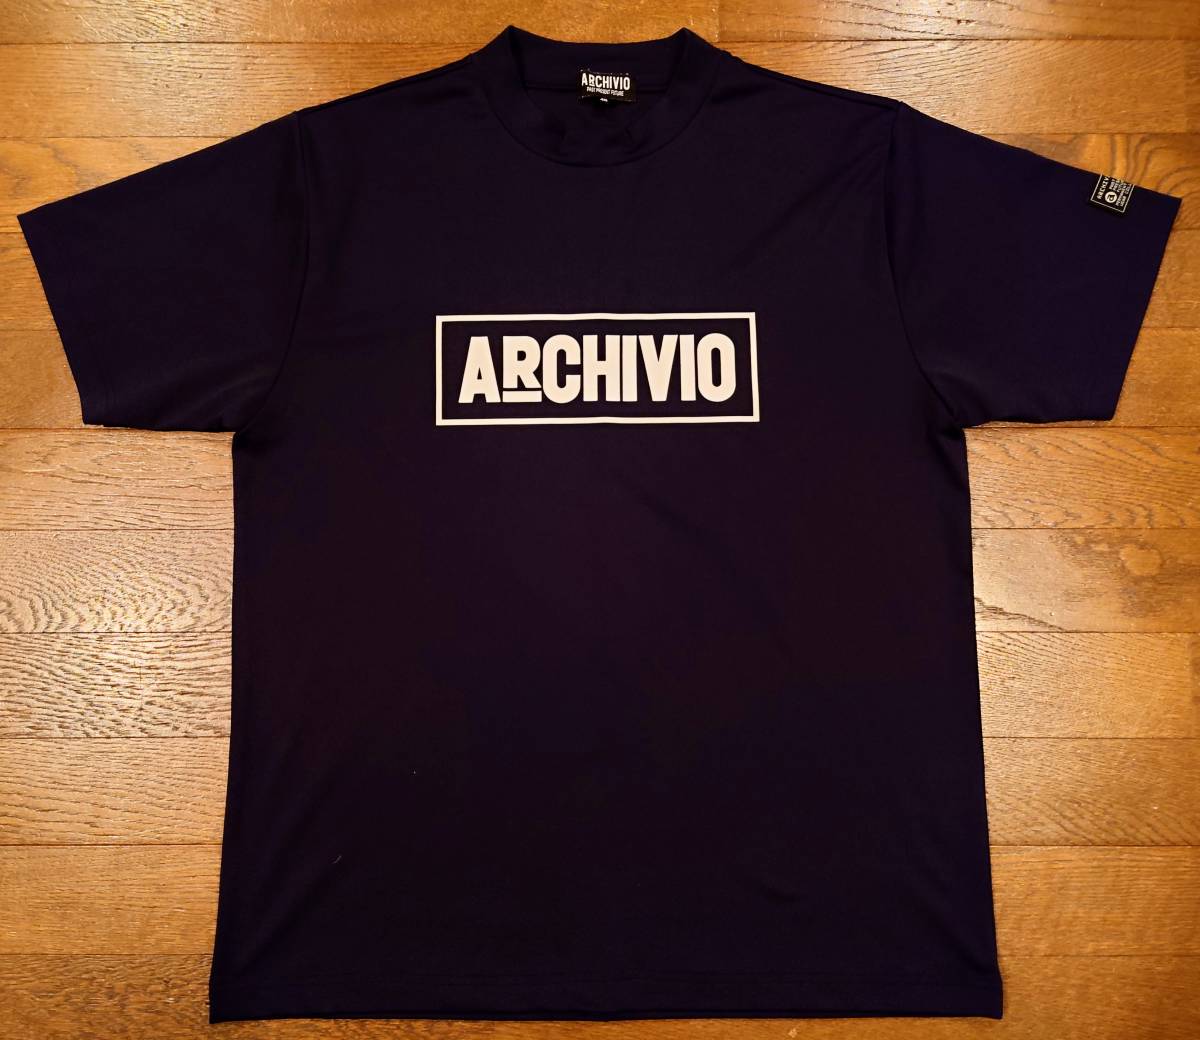 Yahoo!オークション - アルチビオ ARCHIVIO メンズ ブラック 48 Lサ...